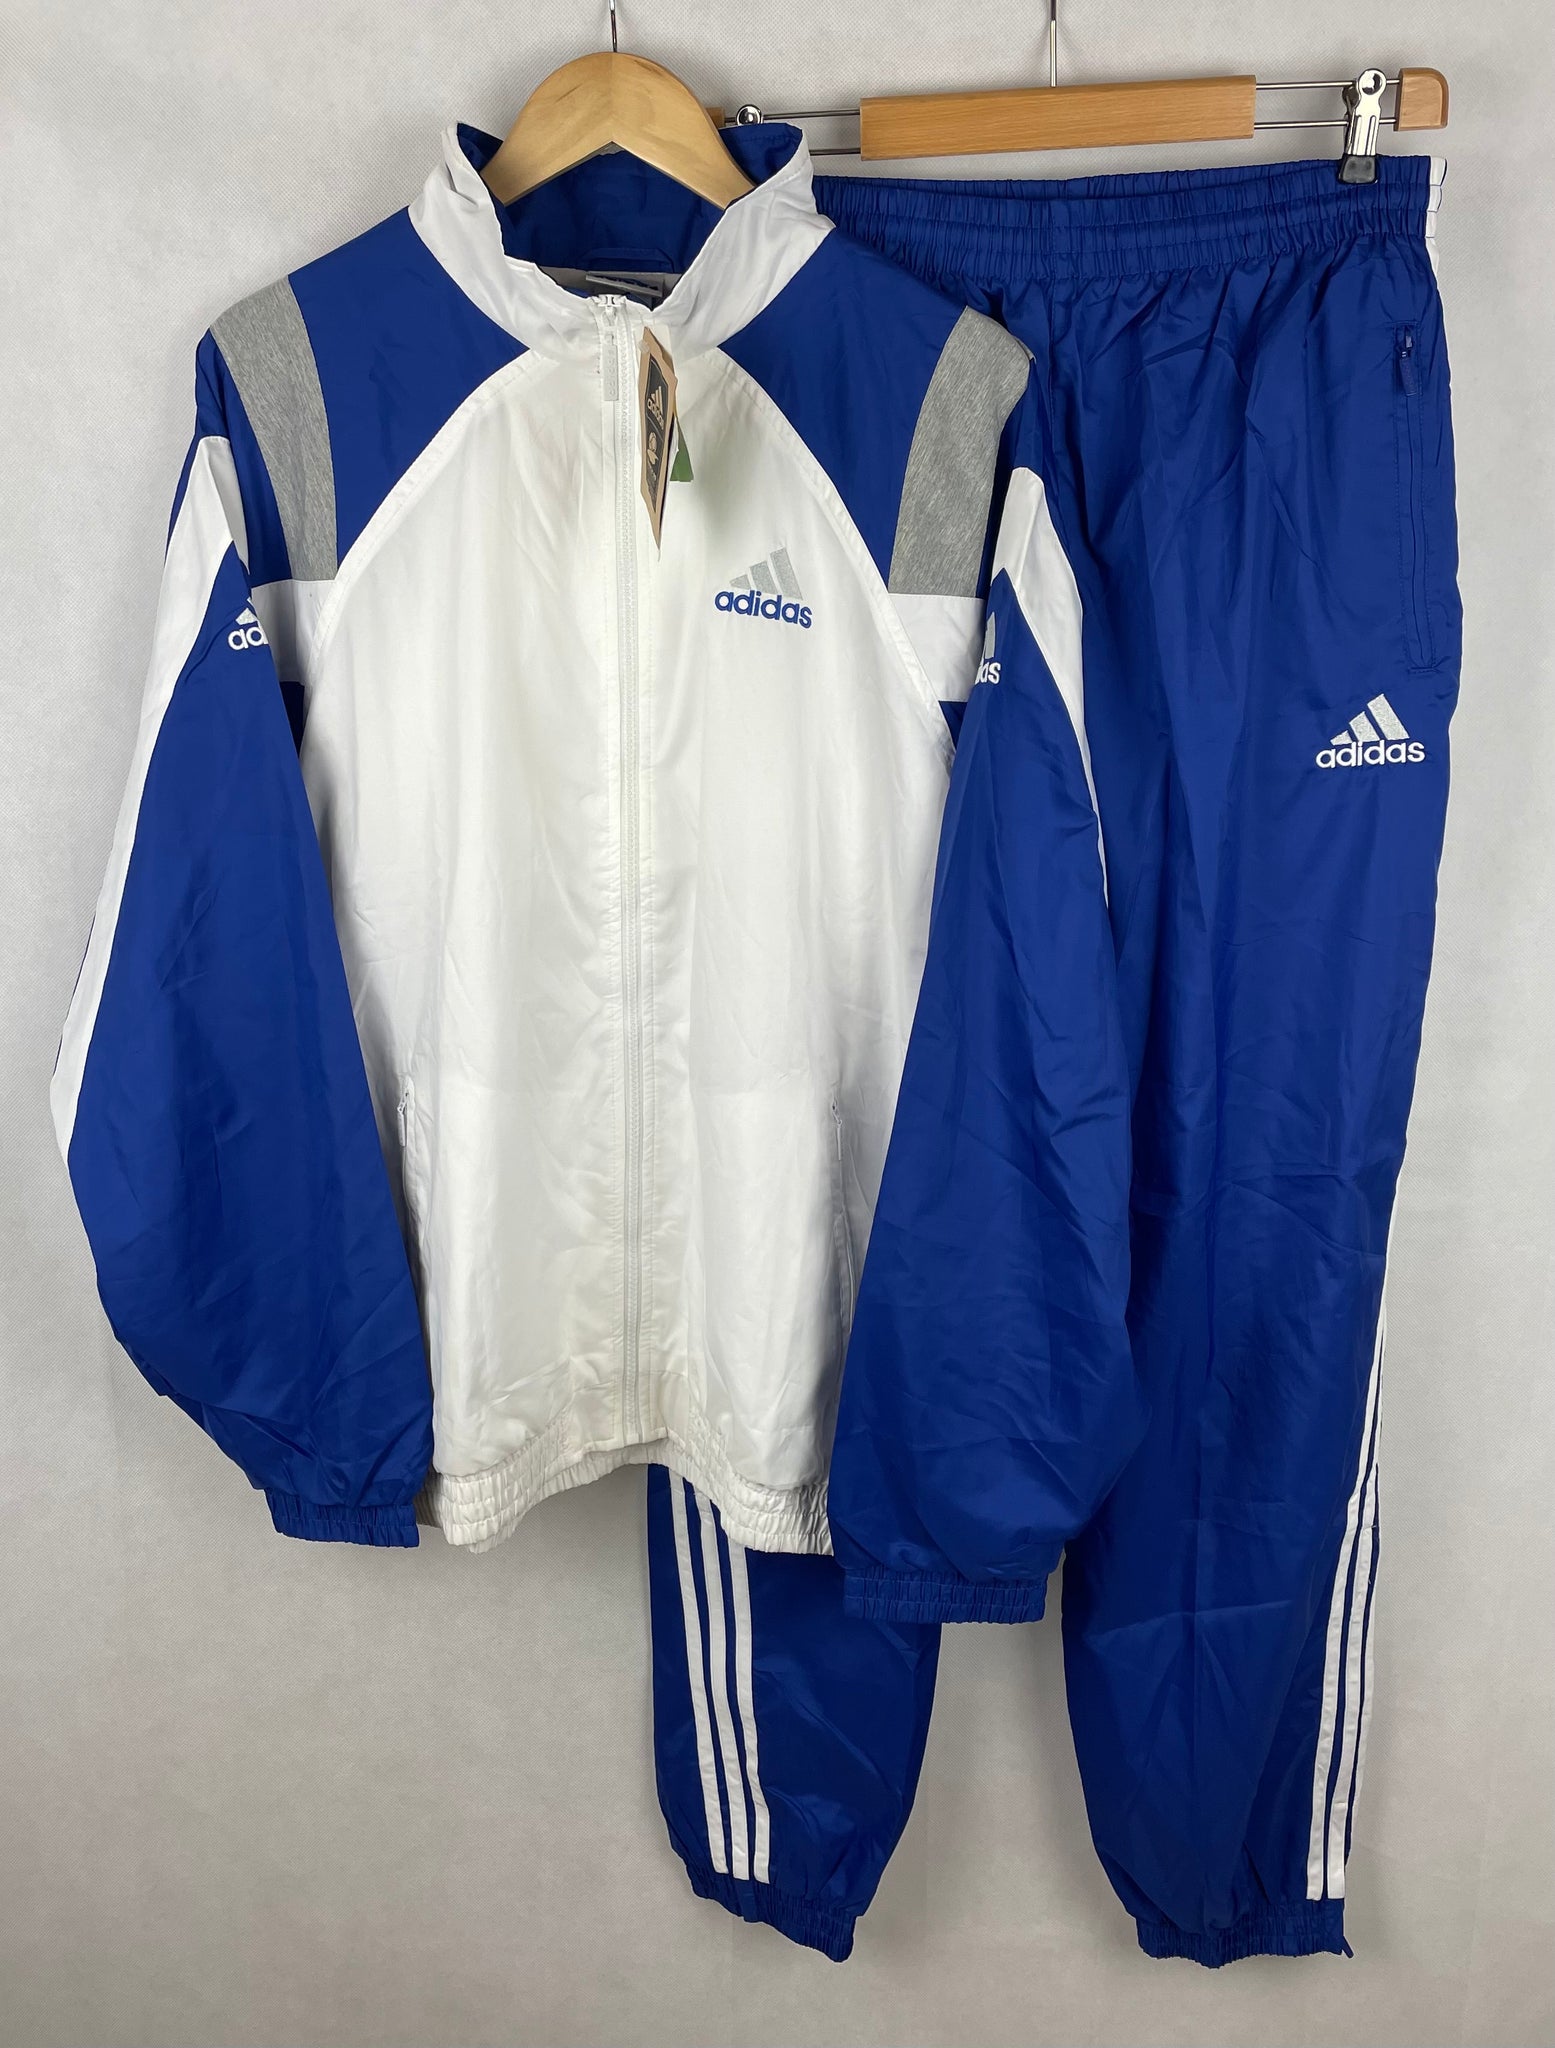 Vintage Adidas Trainingsanzug Gr. L